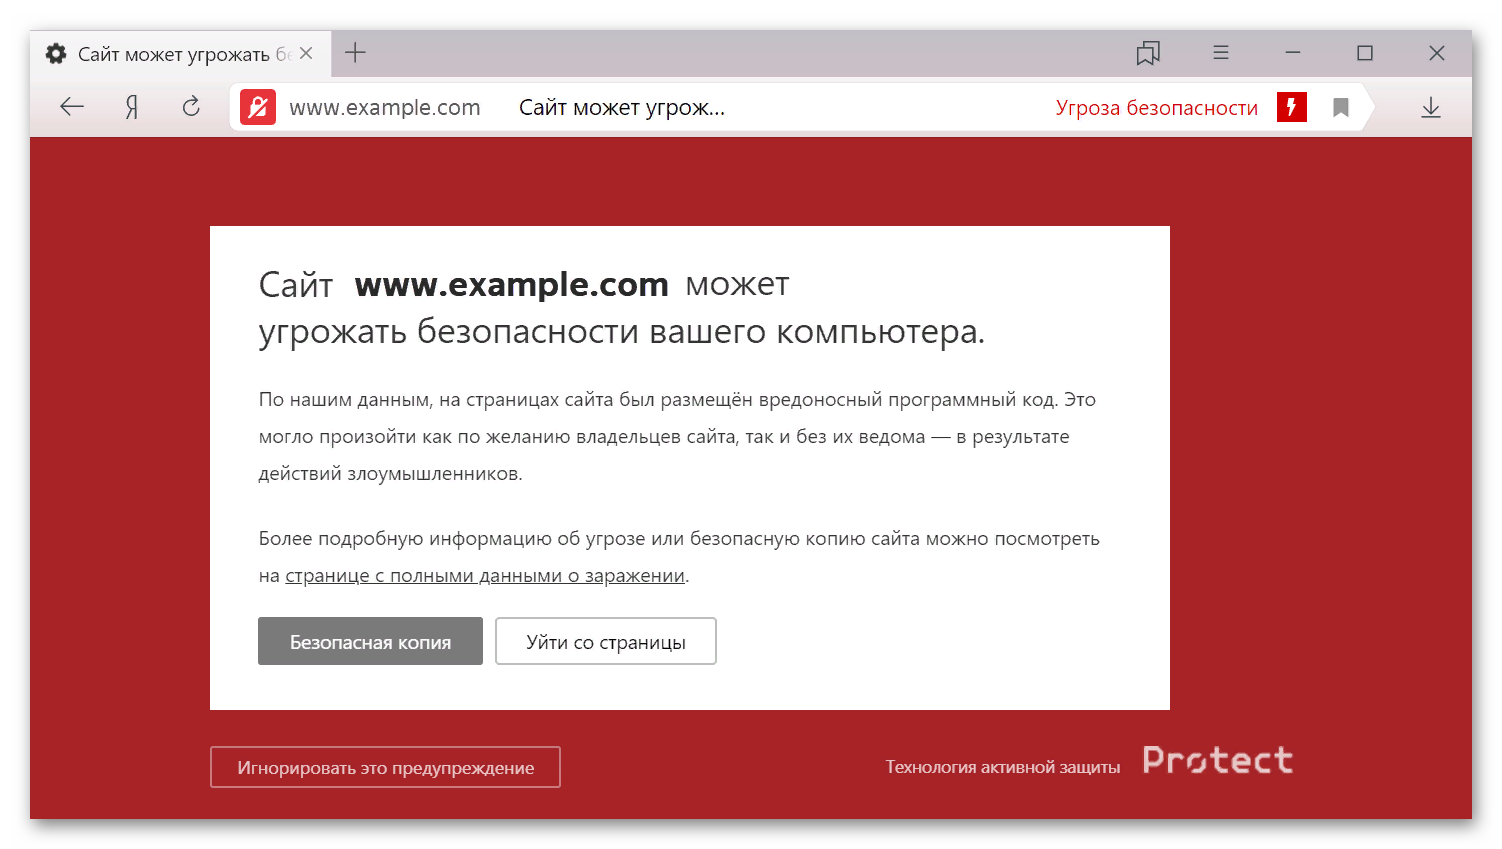 Проверка сертификата безопасности в Яндекс Браузере